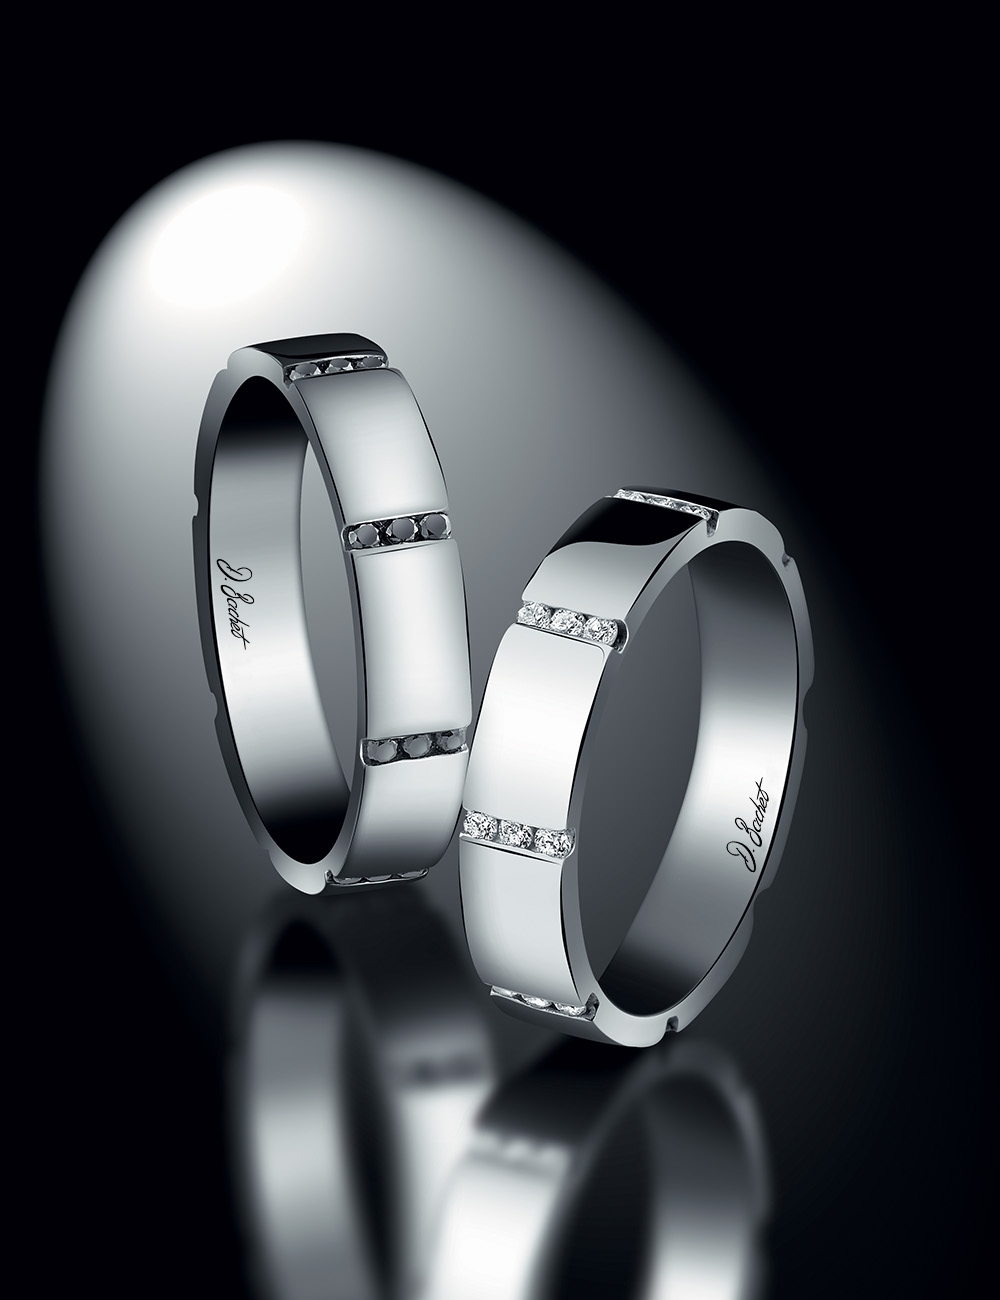 Alliance femme moderne et sophistiquée avec 8 rangées de diamants blancs, symbolisant l'union éternelle.